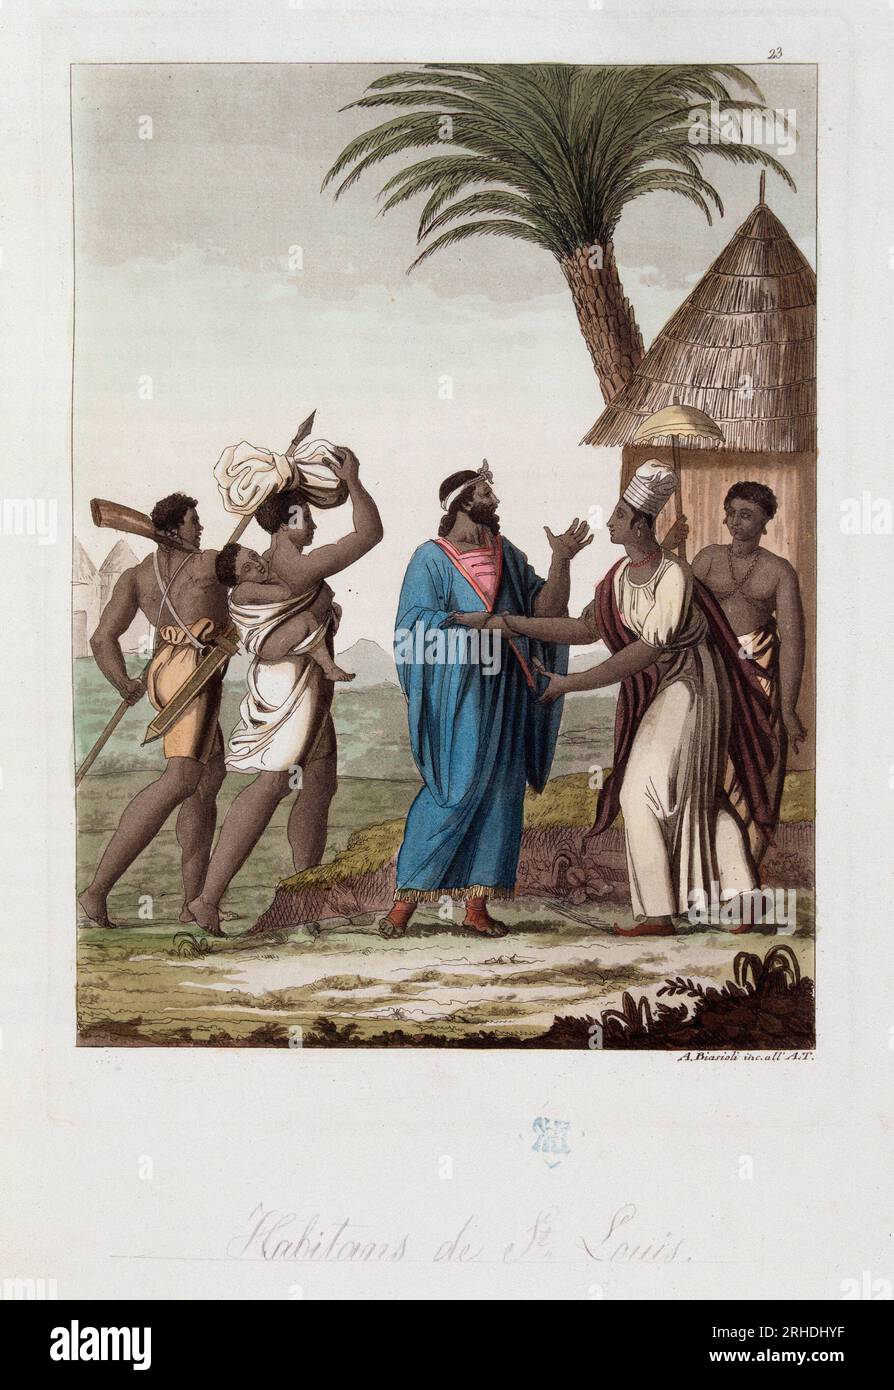 Habitants de Saint Louis du Senegal - in "Le costume ancien et moderne" par Ferrario,  1819-20 Stock Photo